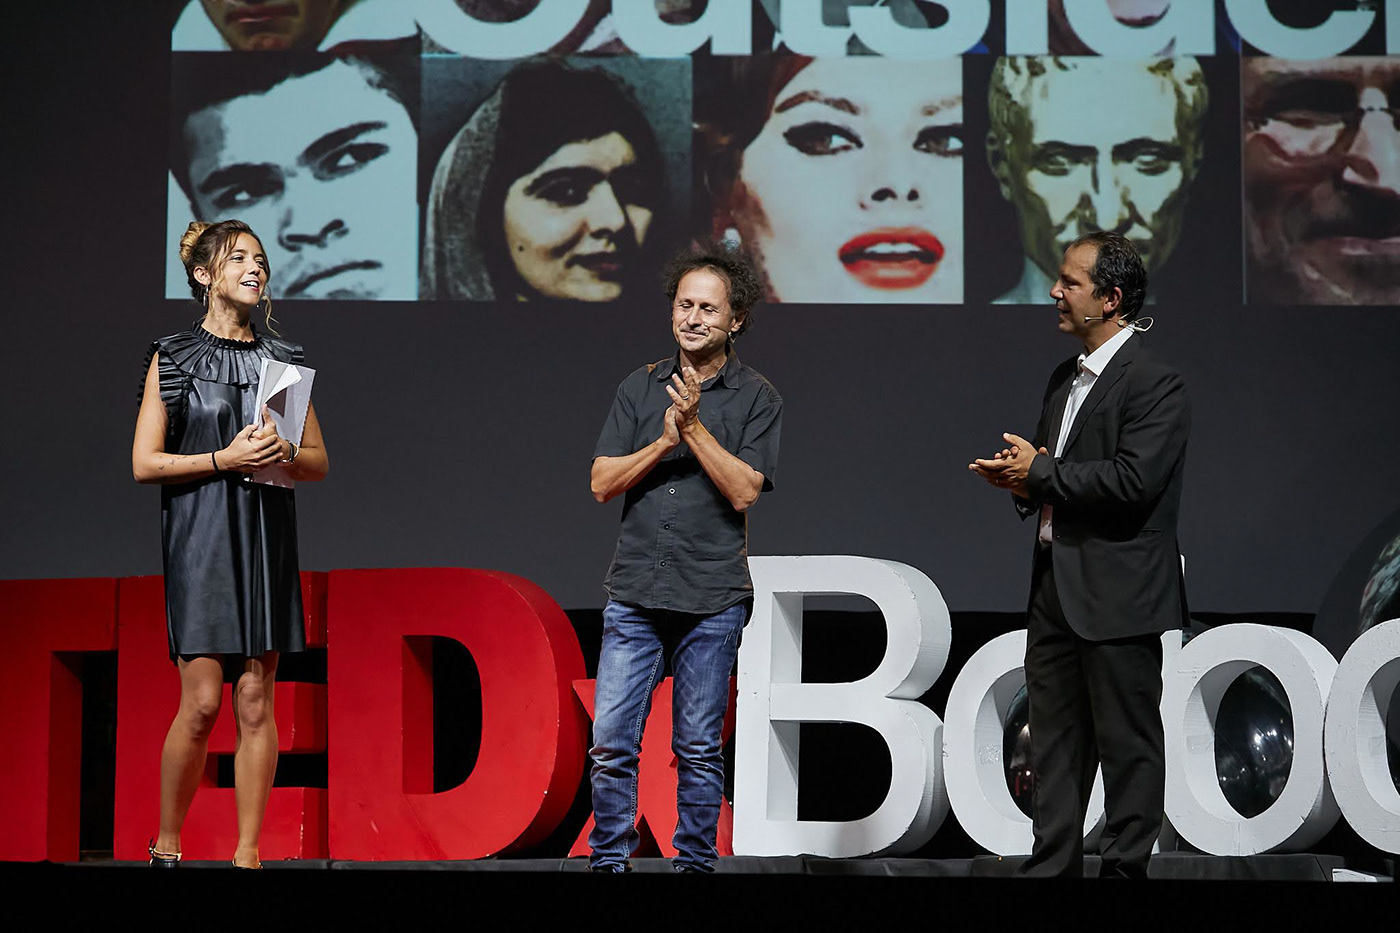 outsider TEDx TedXBologna